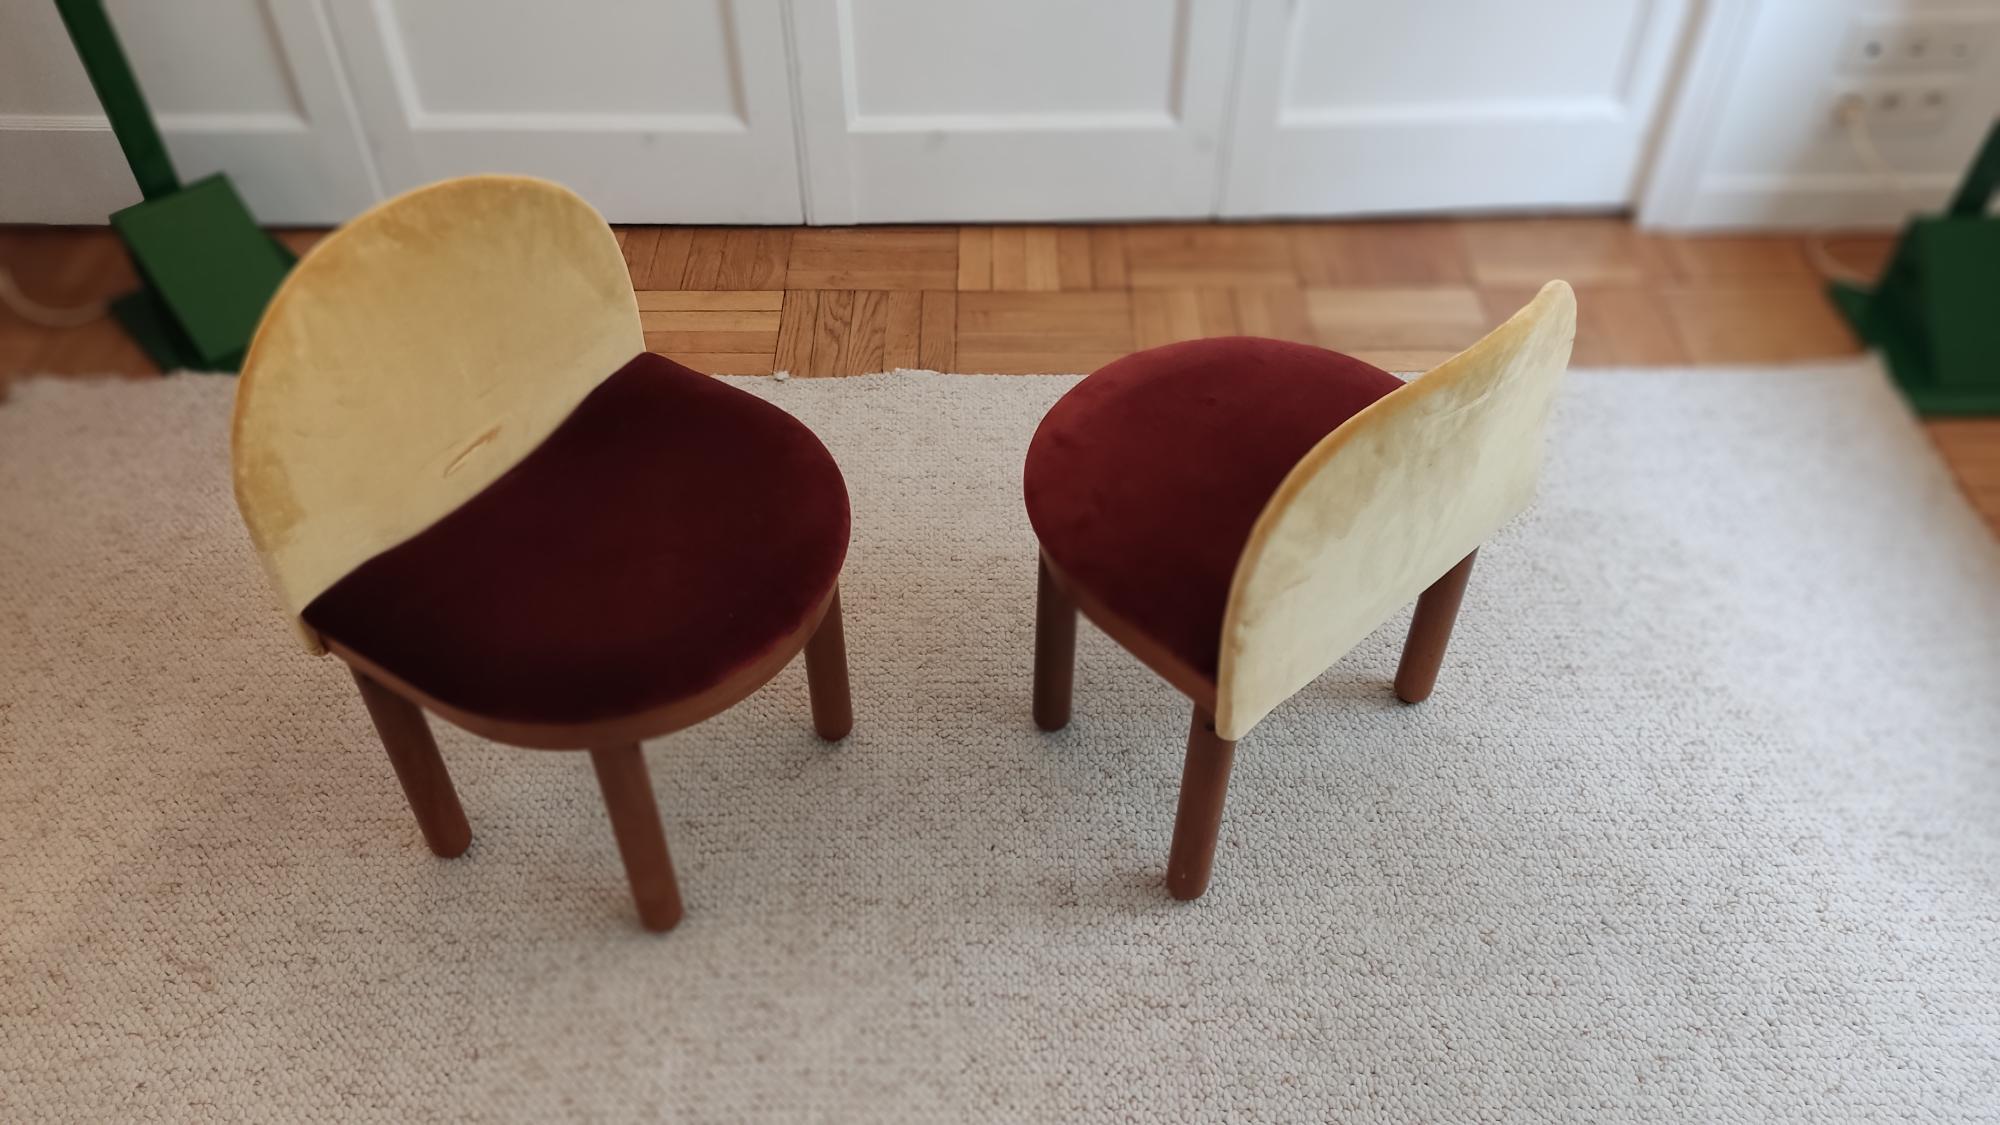 Hübsches Set aus 2 kleinen italienischen Stühlen aus Holz und mit warmem gelbem und rotem Samt gepolstert. Die runden Beine erinnern an die Tische von Gianfranco Frattini. Möglichkeit, einen dritten Stuhl zu bekommen. 